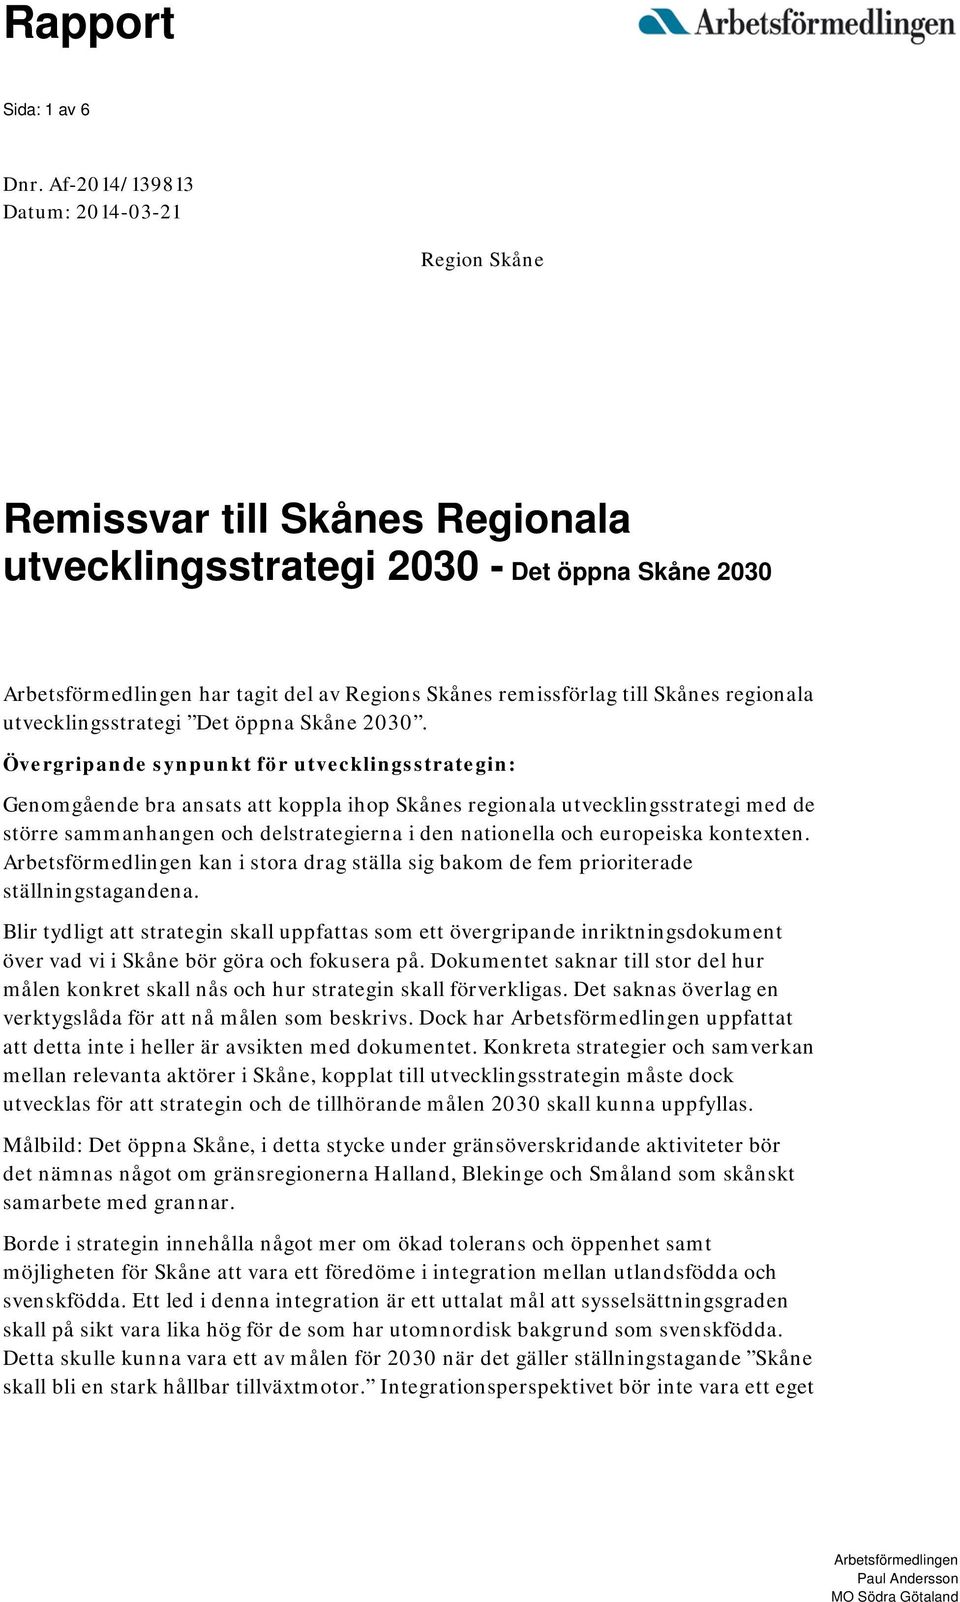 Skånes regionala utvecklingsstrategi Det öppna Skåne 2030.